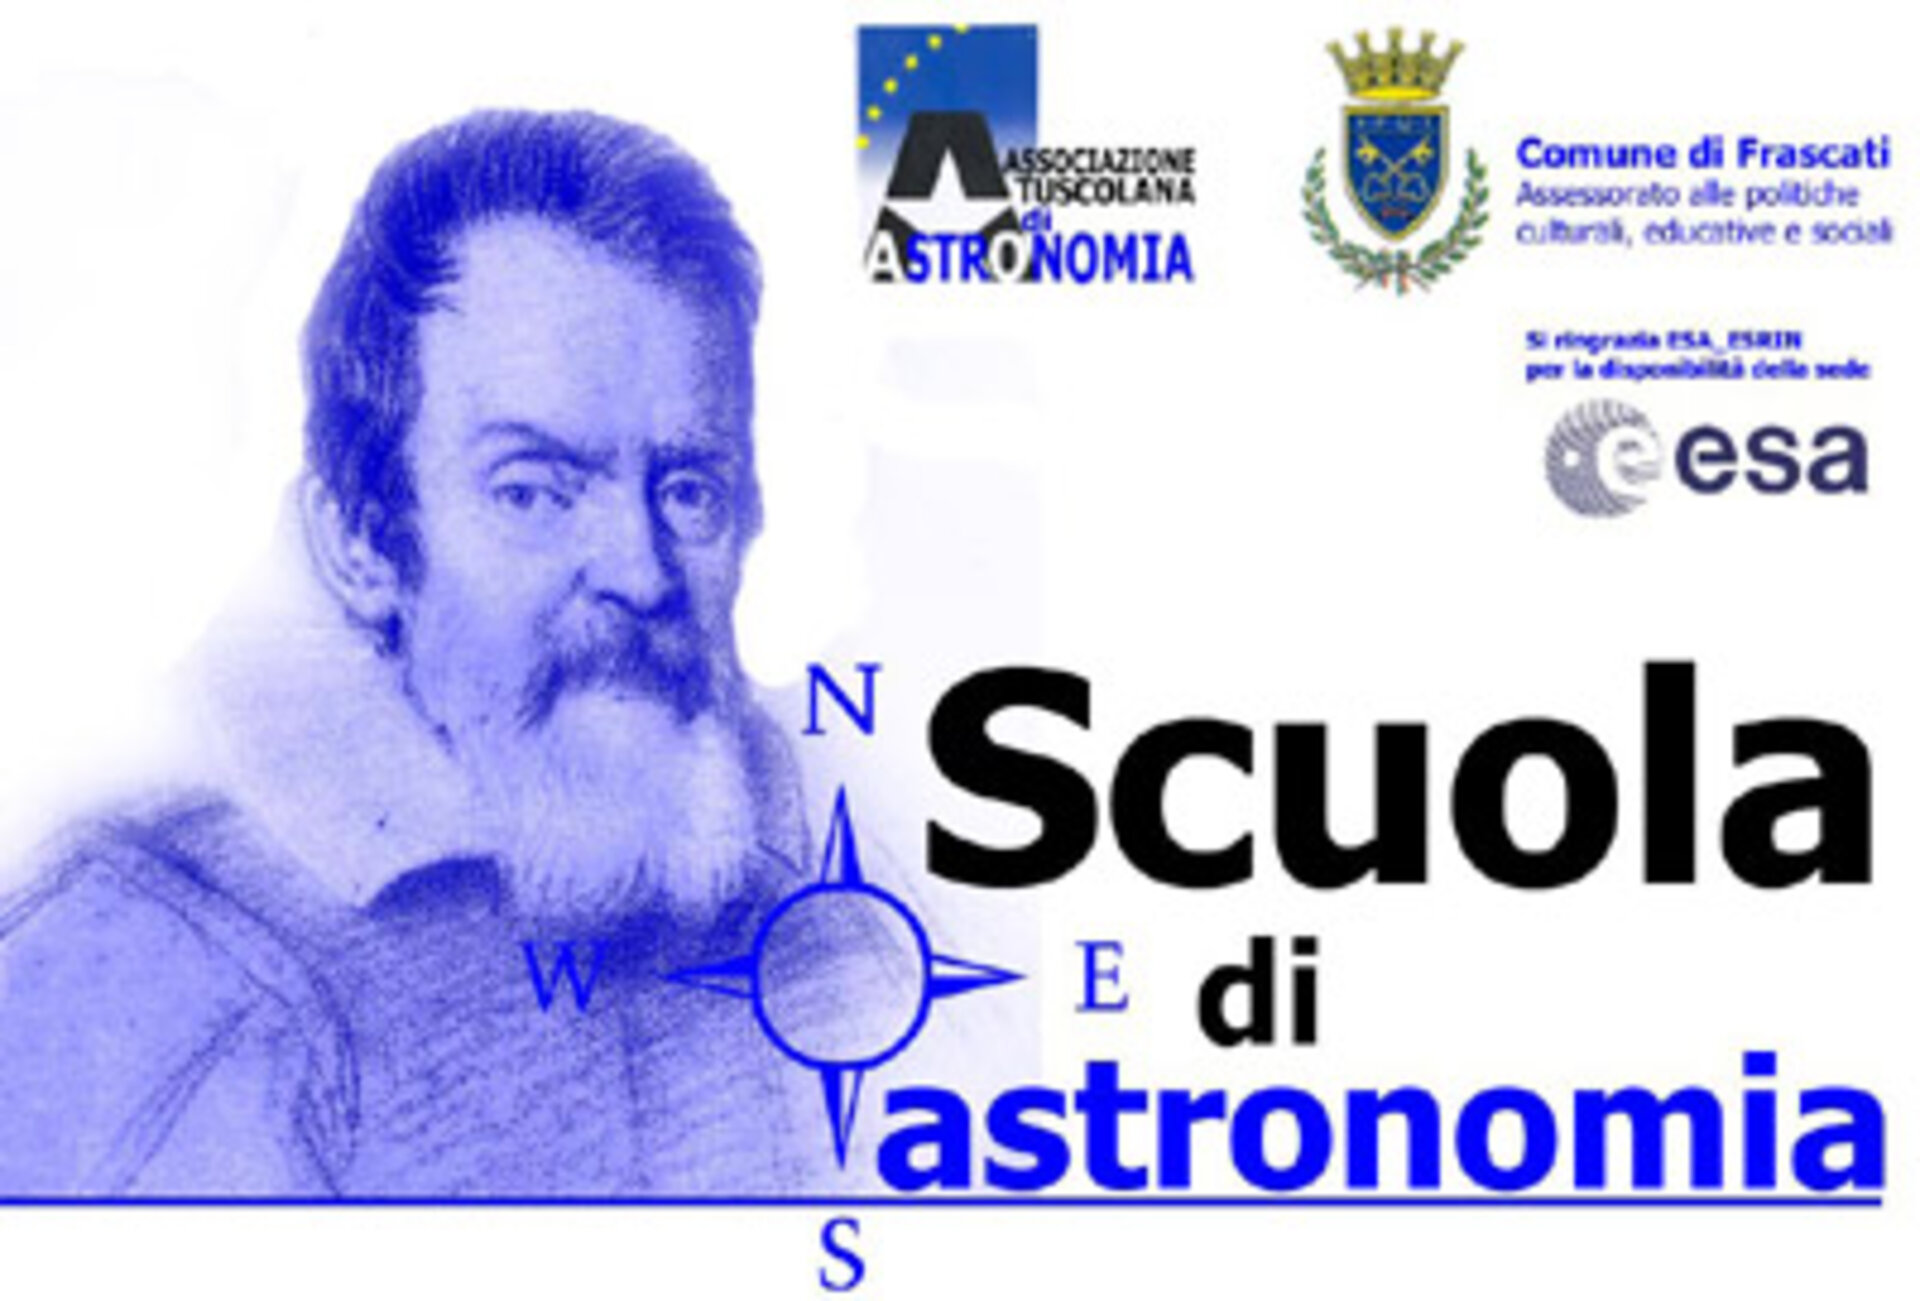 ESA - Scuola di astronomia